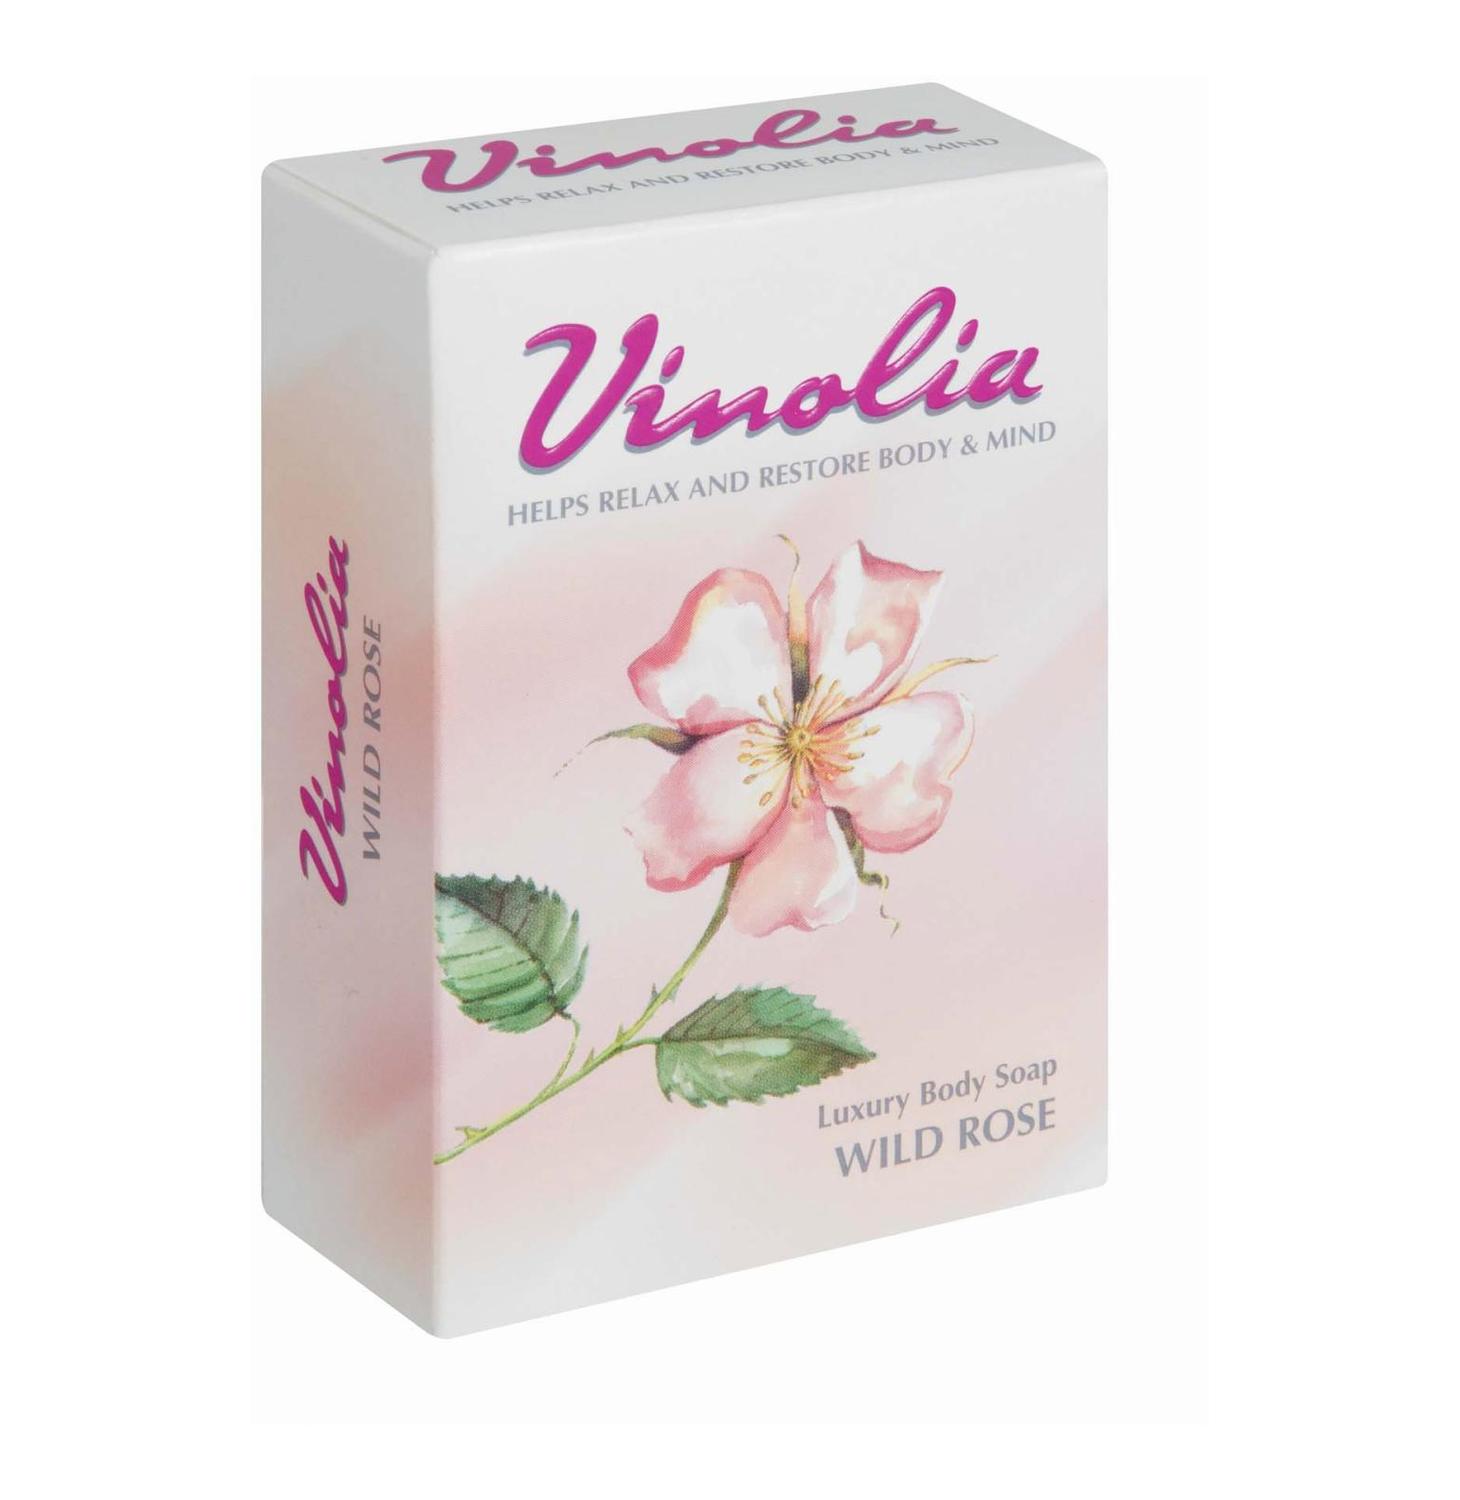 Vinolia Wild Rose Soap bar